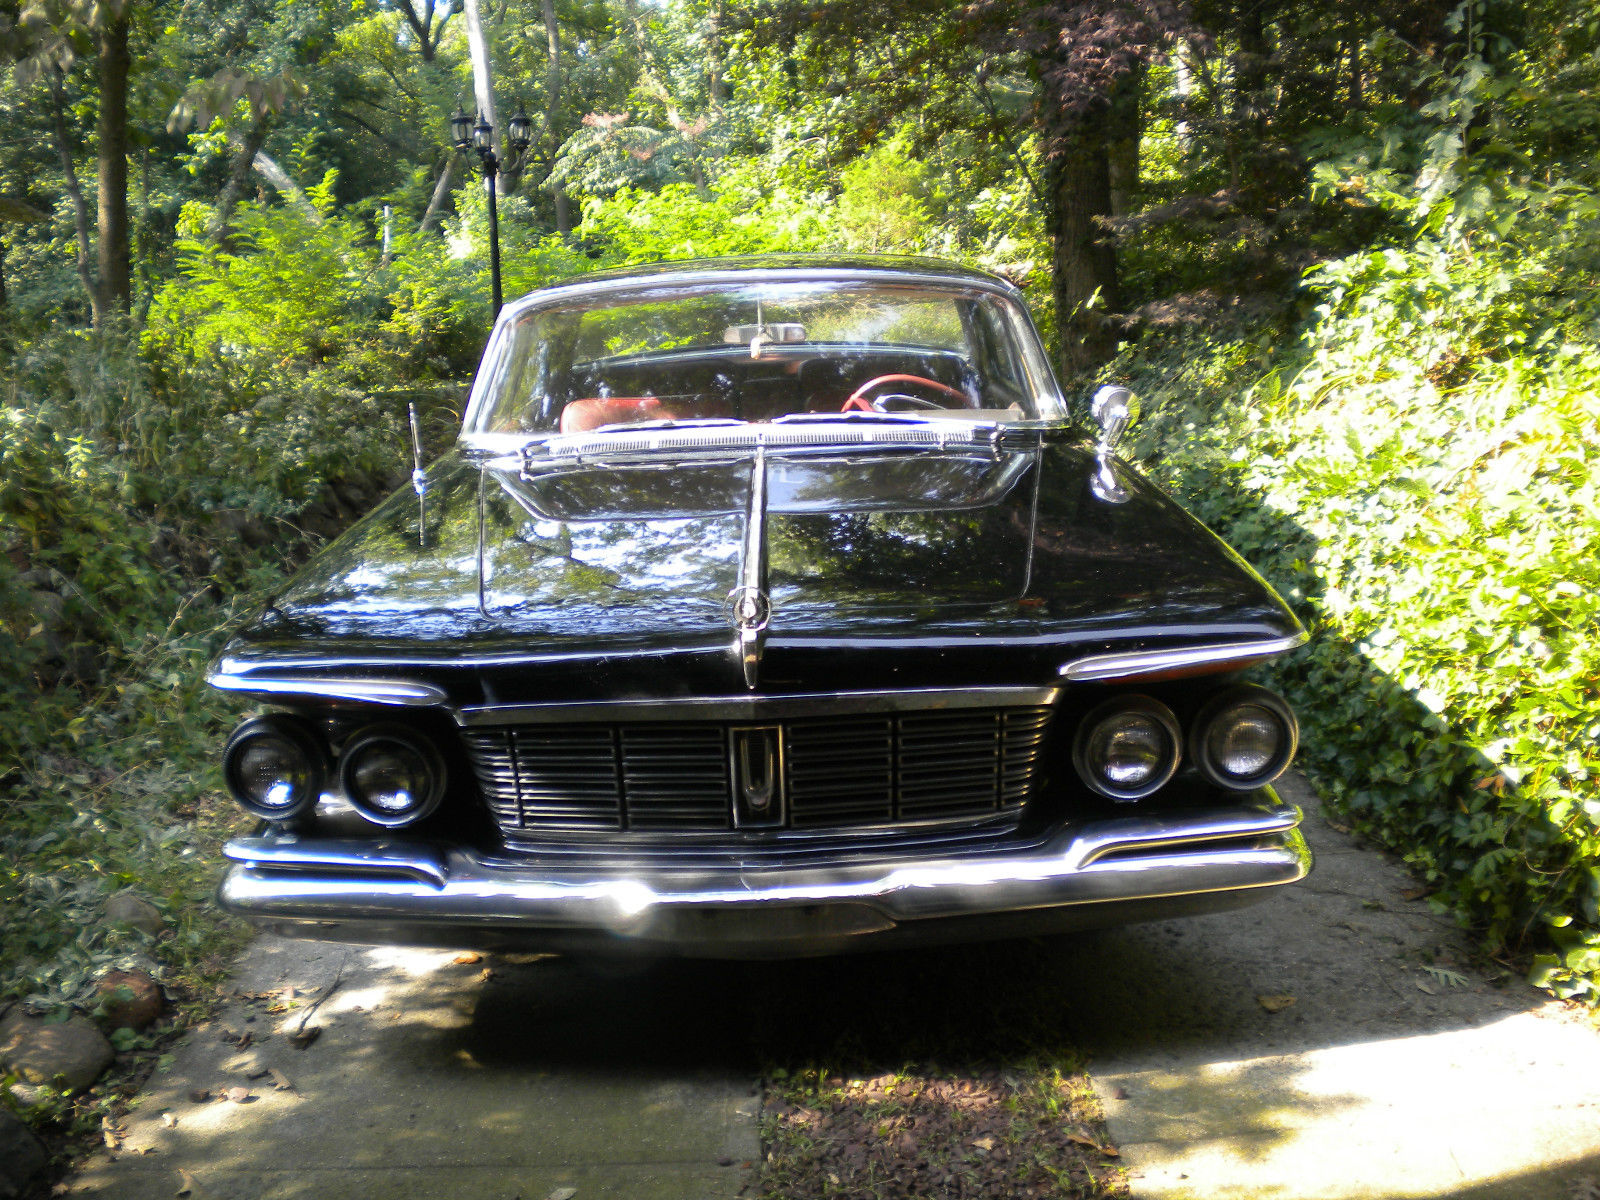 1963 Chrysler Imperial